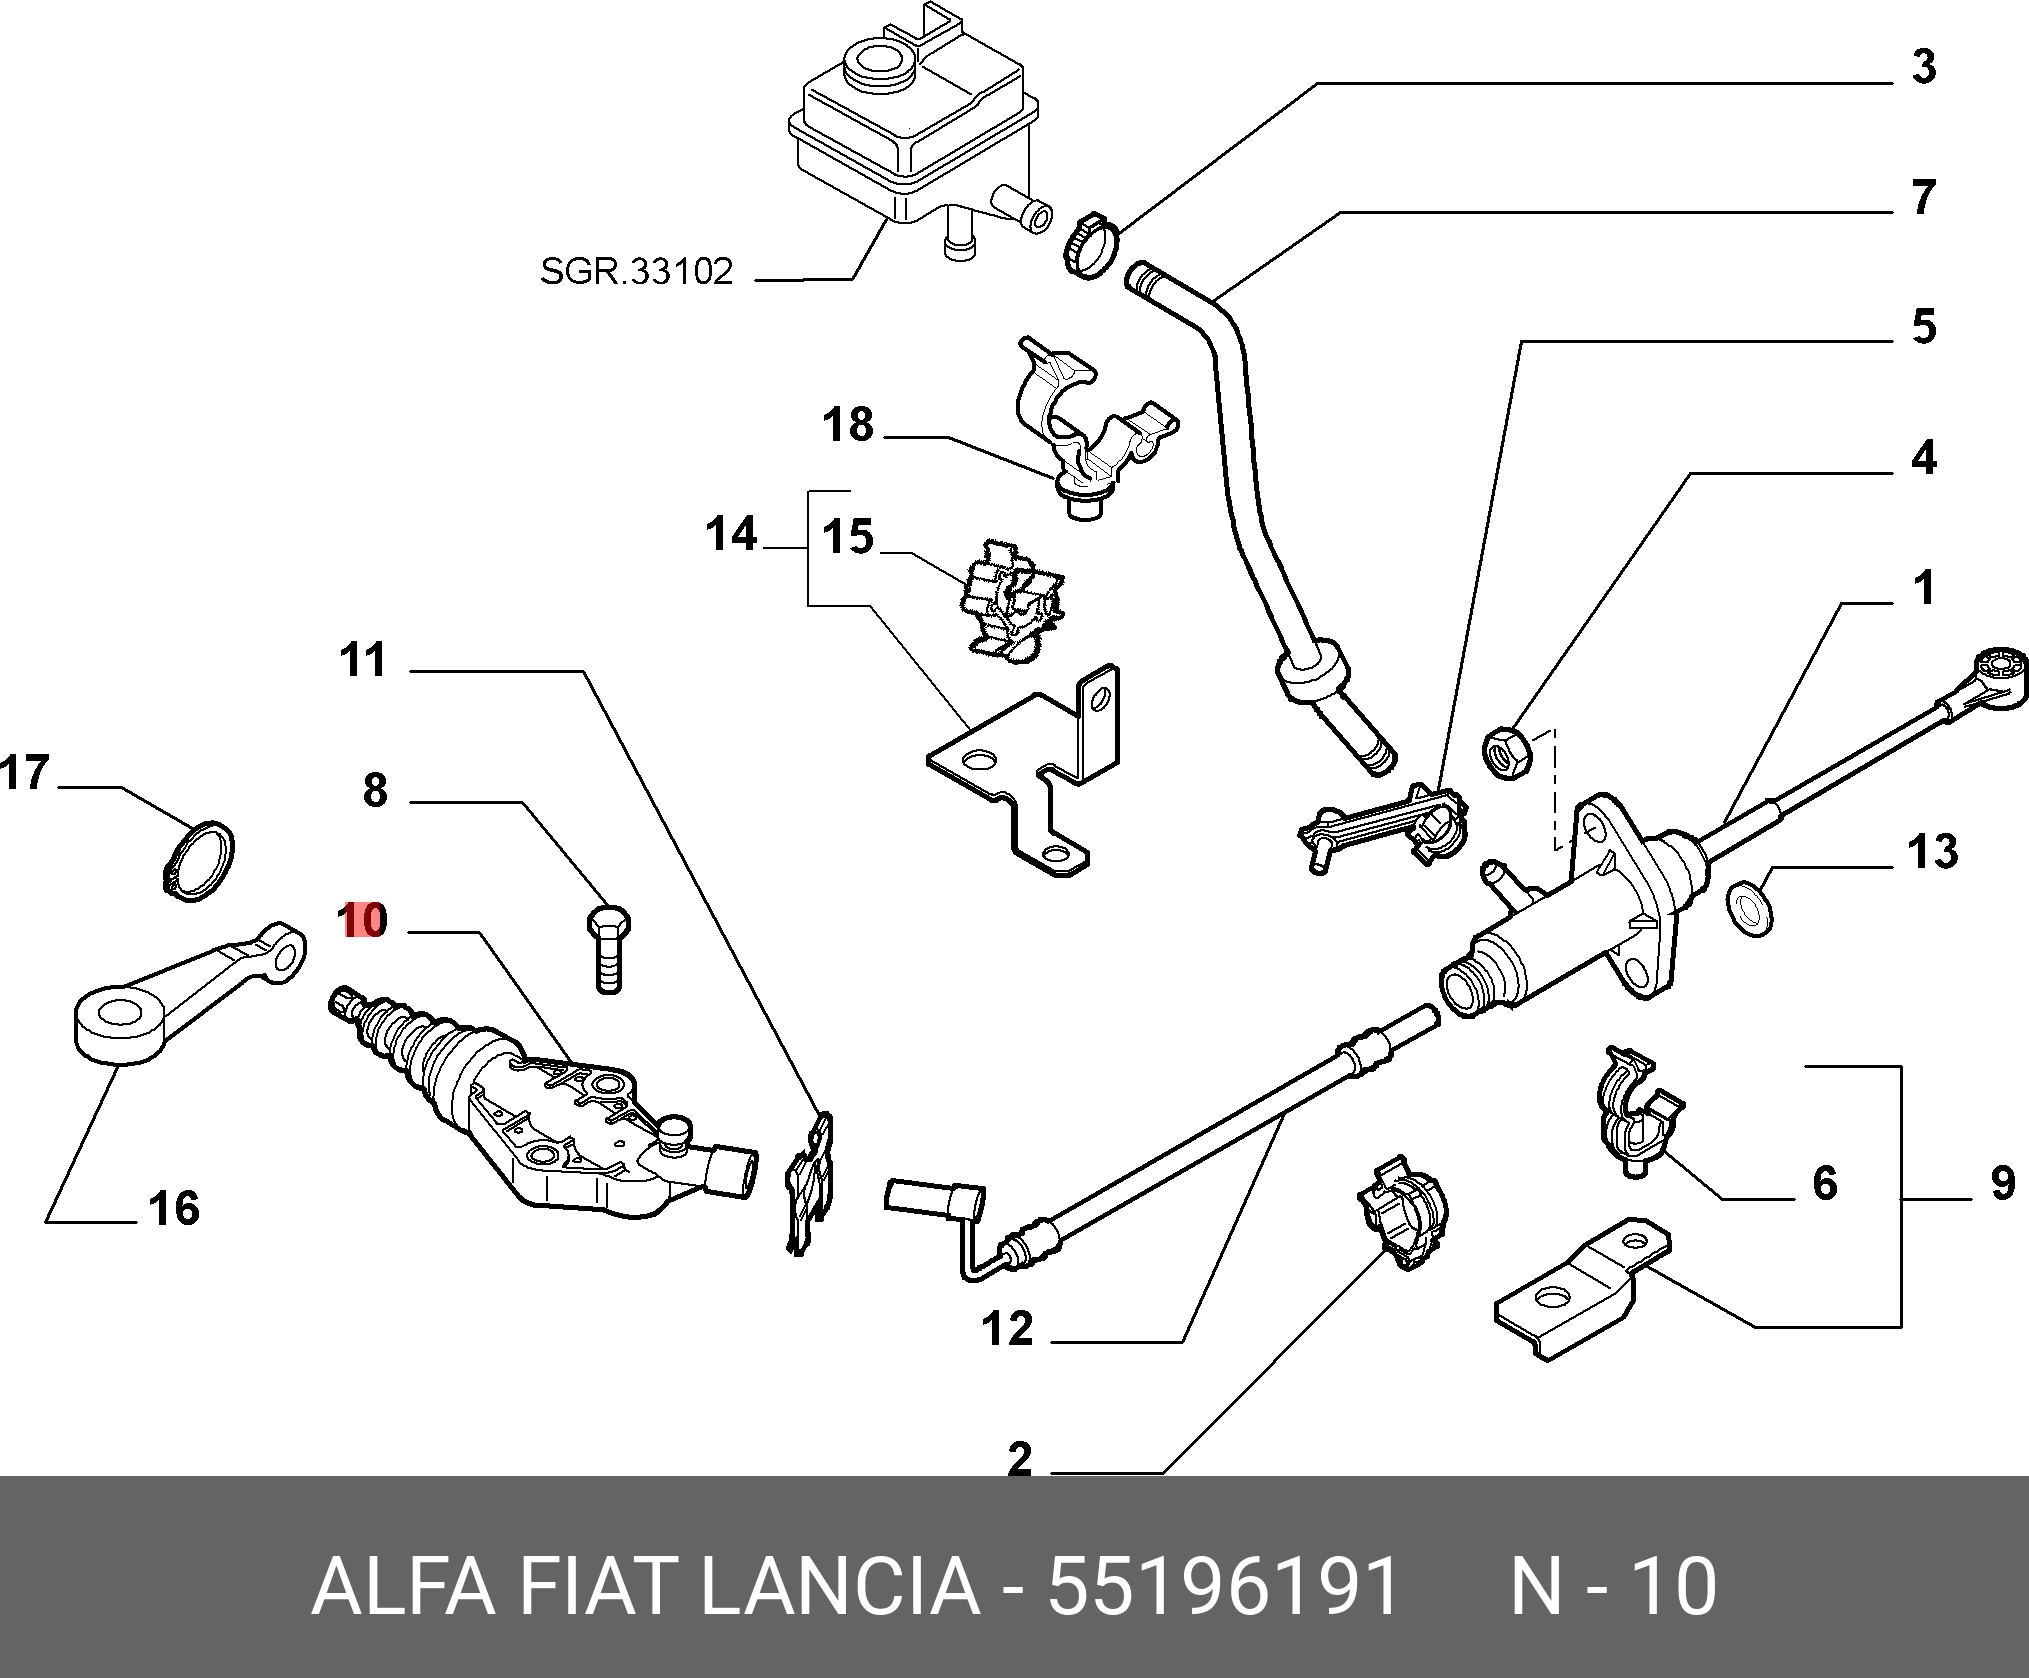 Педаль сцепление Fiat Albea 1.4 схема. Главный цилиндр сцепления Фиат Альбеа 1.4. Рабочий цилиндр сцепления Фиат Альбеа 1.4. Фиат Альбеа привод сцепления. Добло цилиндр сцепления